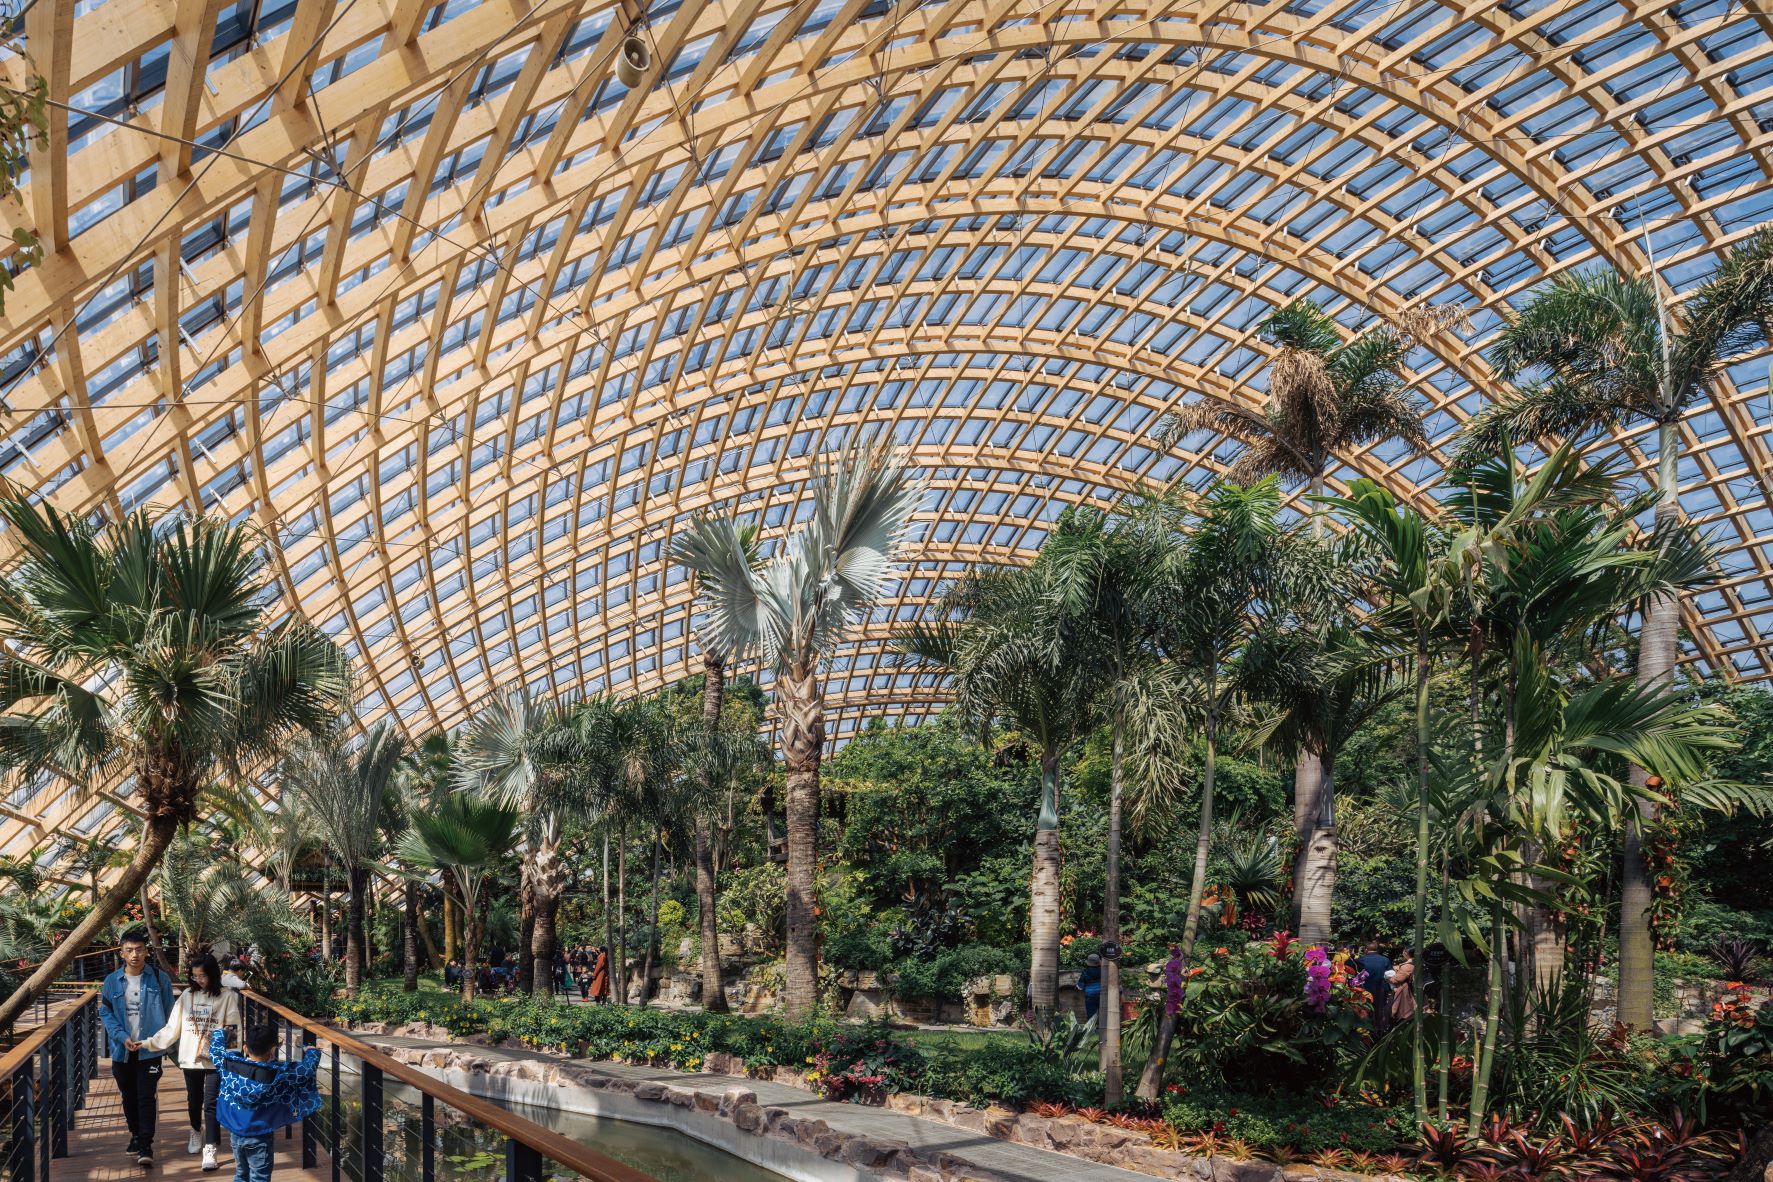 拥有全球最大曲线木格结构的半球体植物园，除了分为热带雨林、沙漠植物、珍稀花卉3个馆区，并且预计将引入 3,000 种植栽。